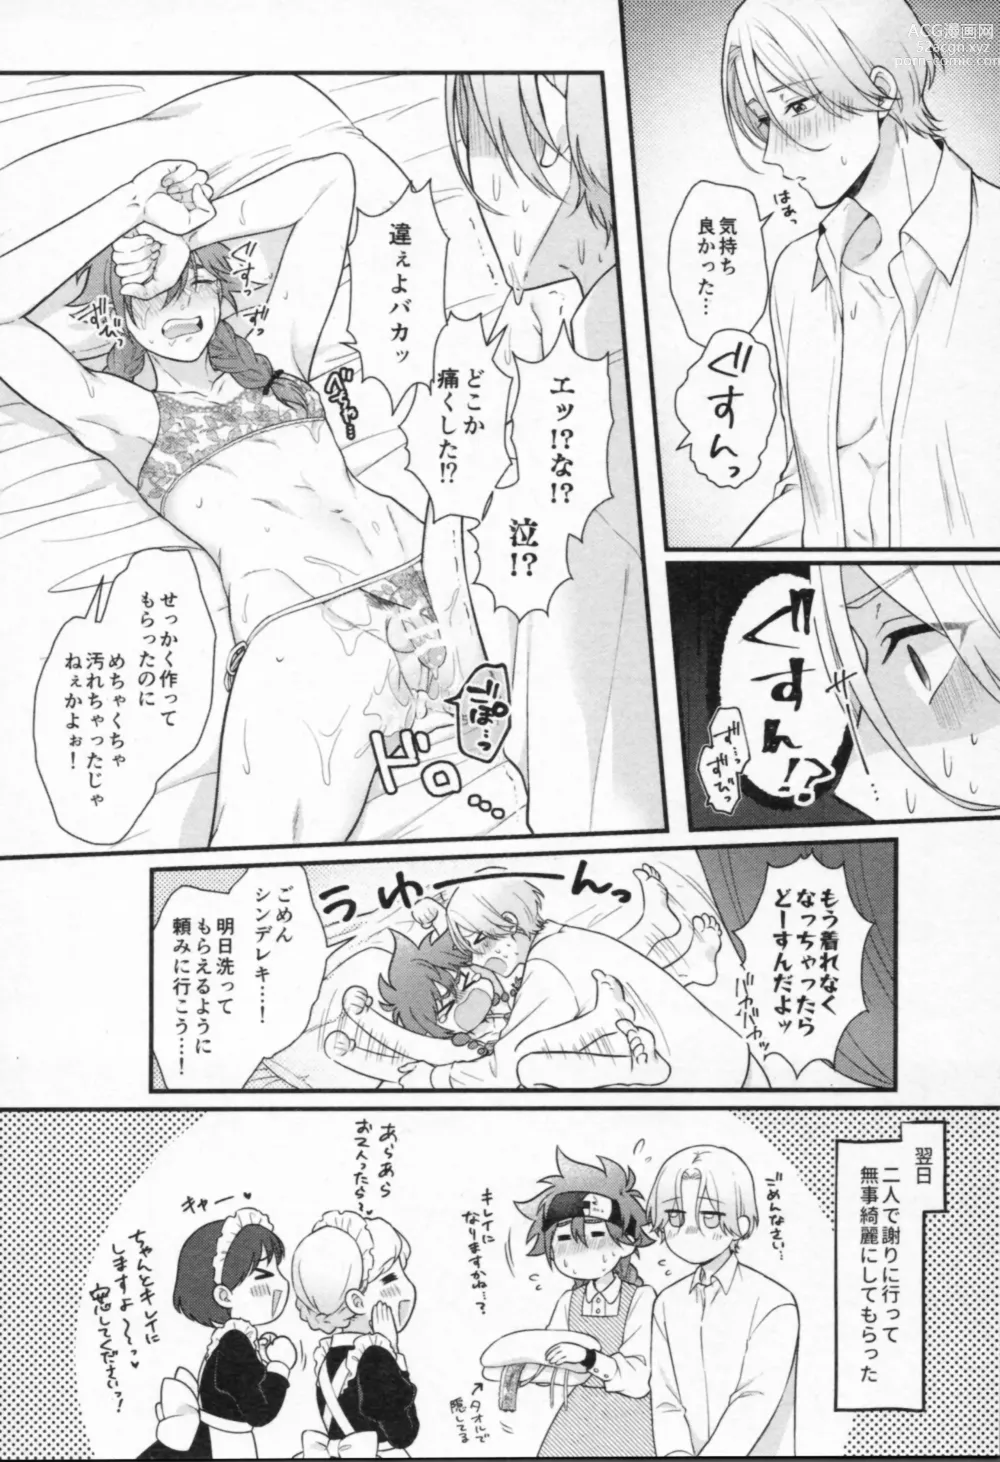 Page 159 of doujinshi Mahō ga tokete mo